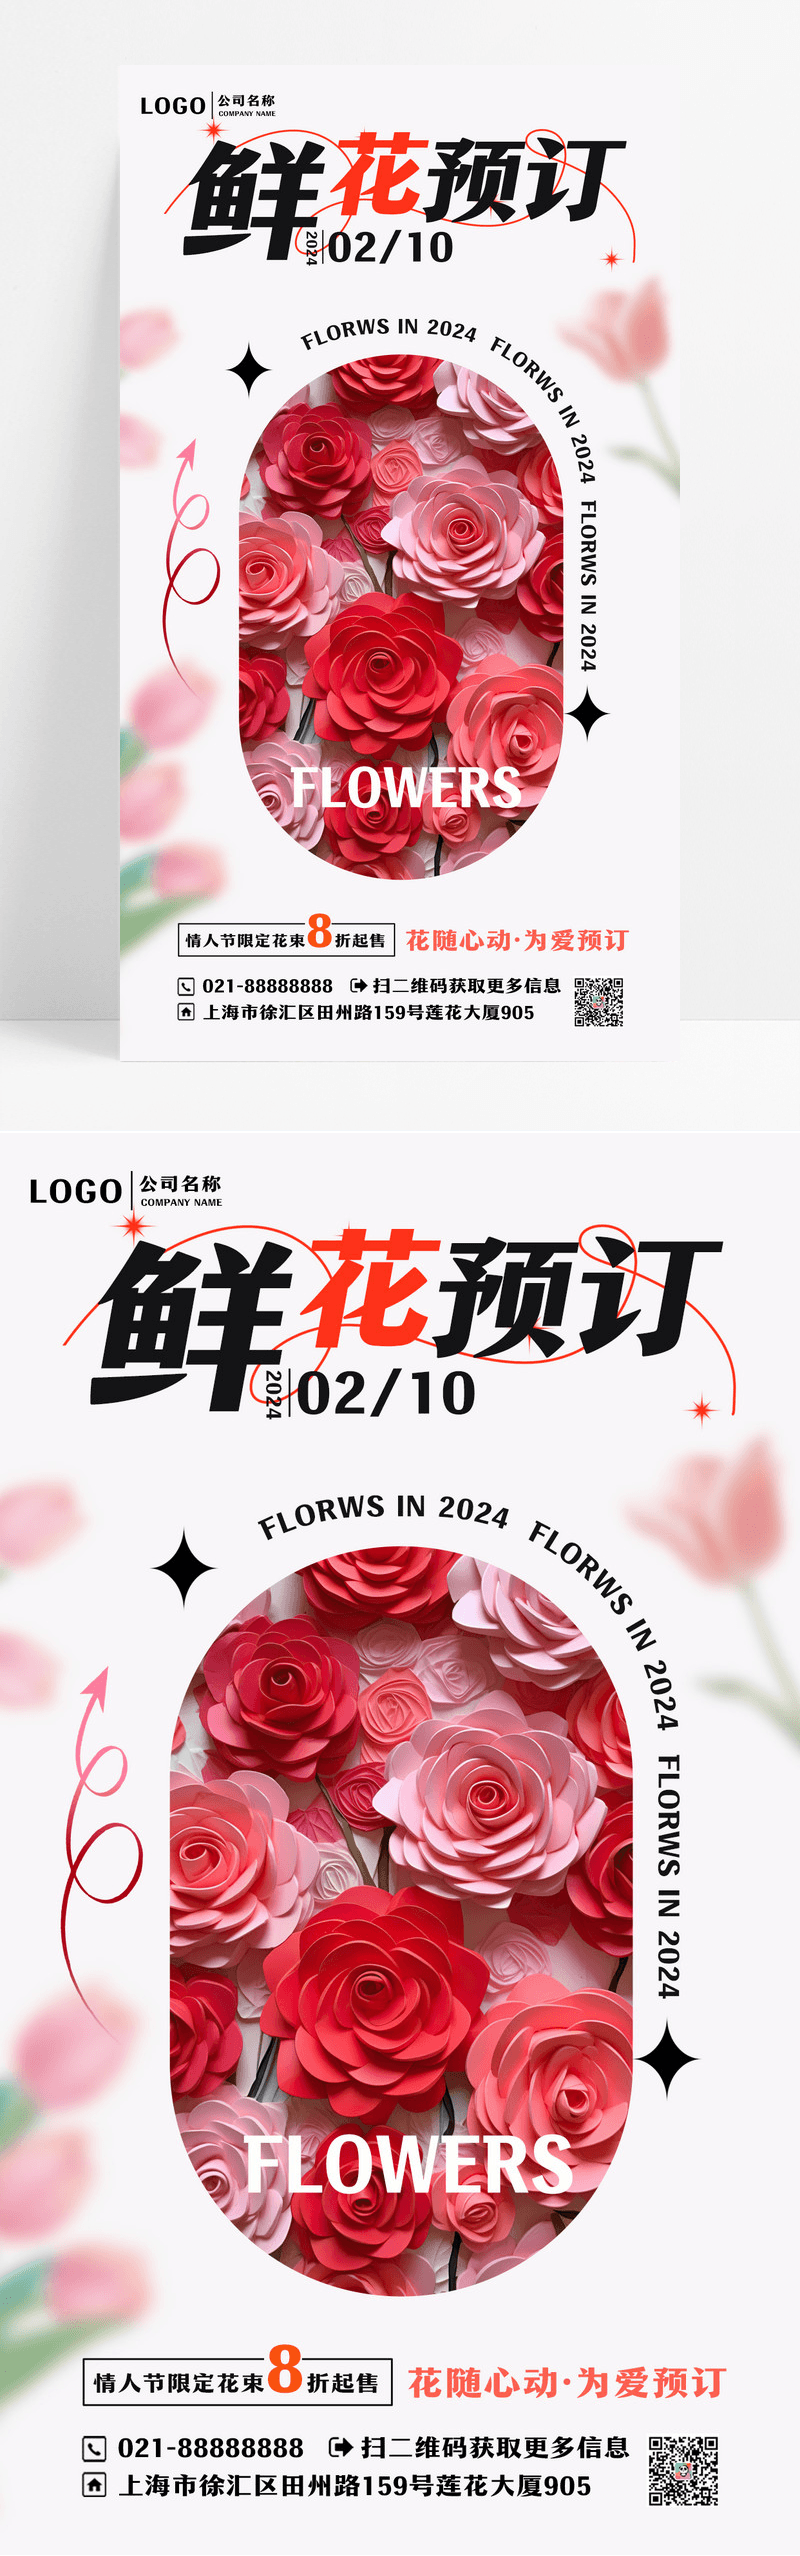 鲜花预定玫瑰花红色简约广告宣传海报设计